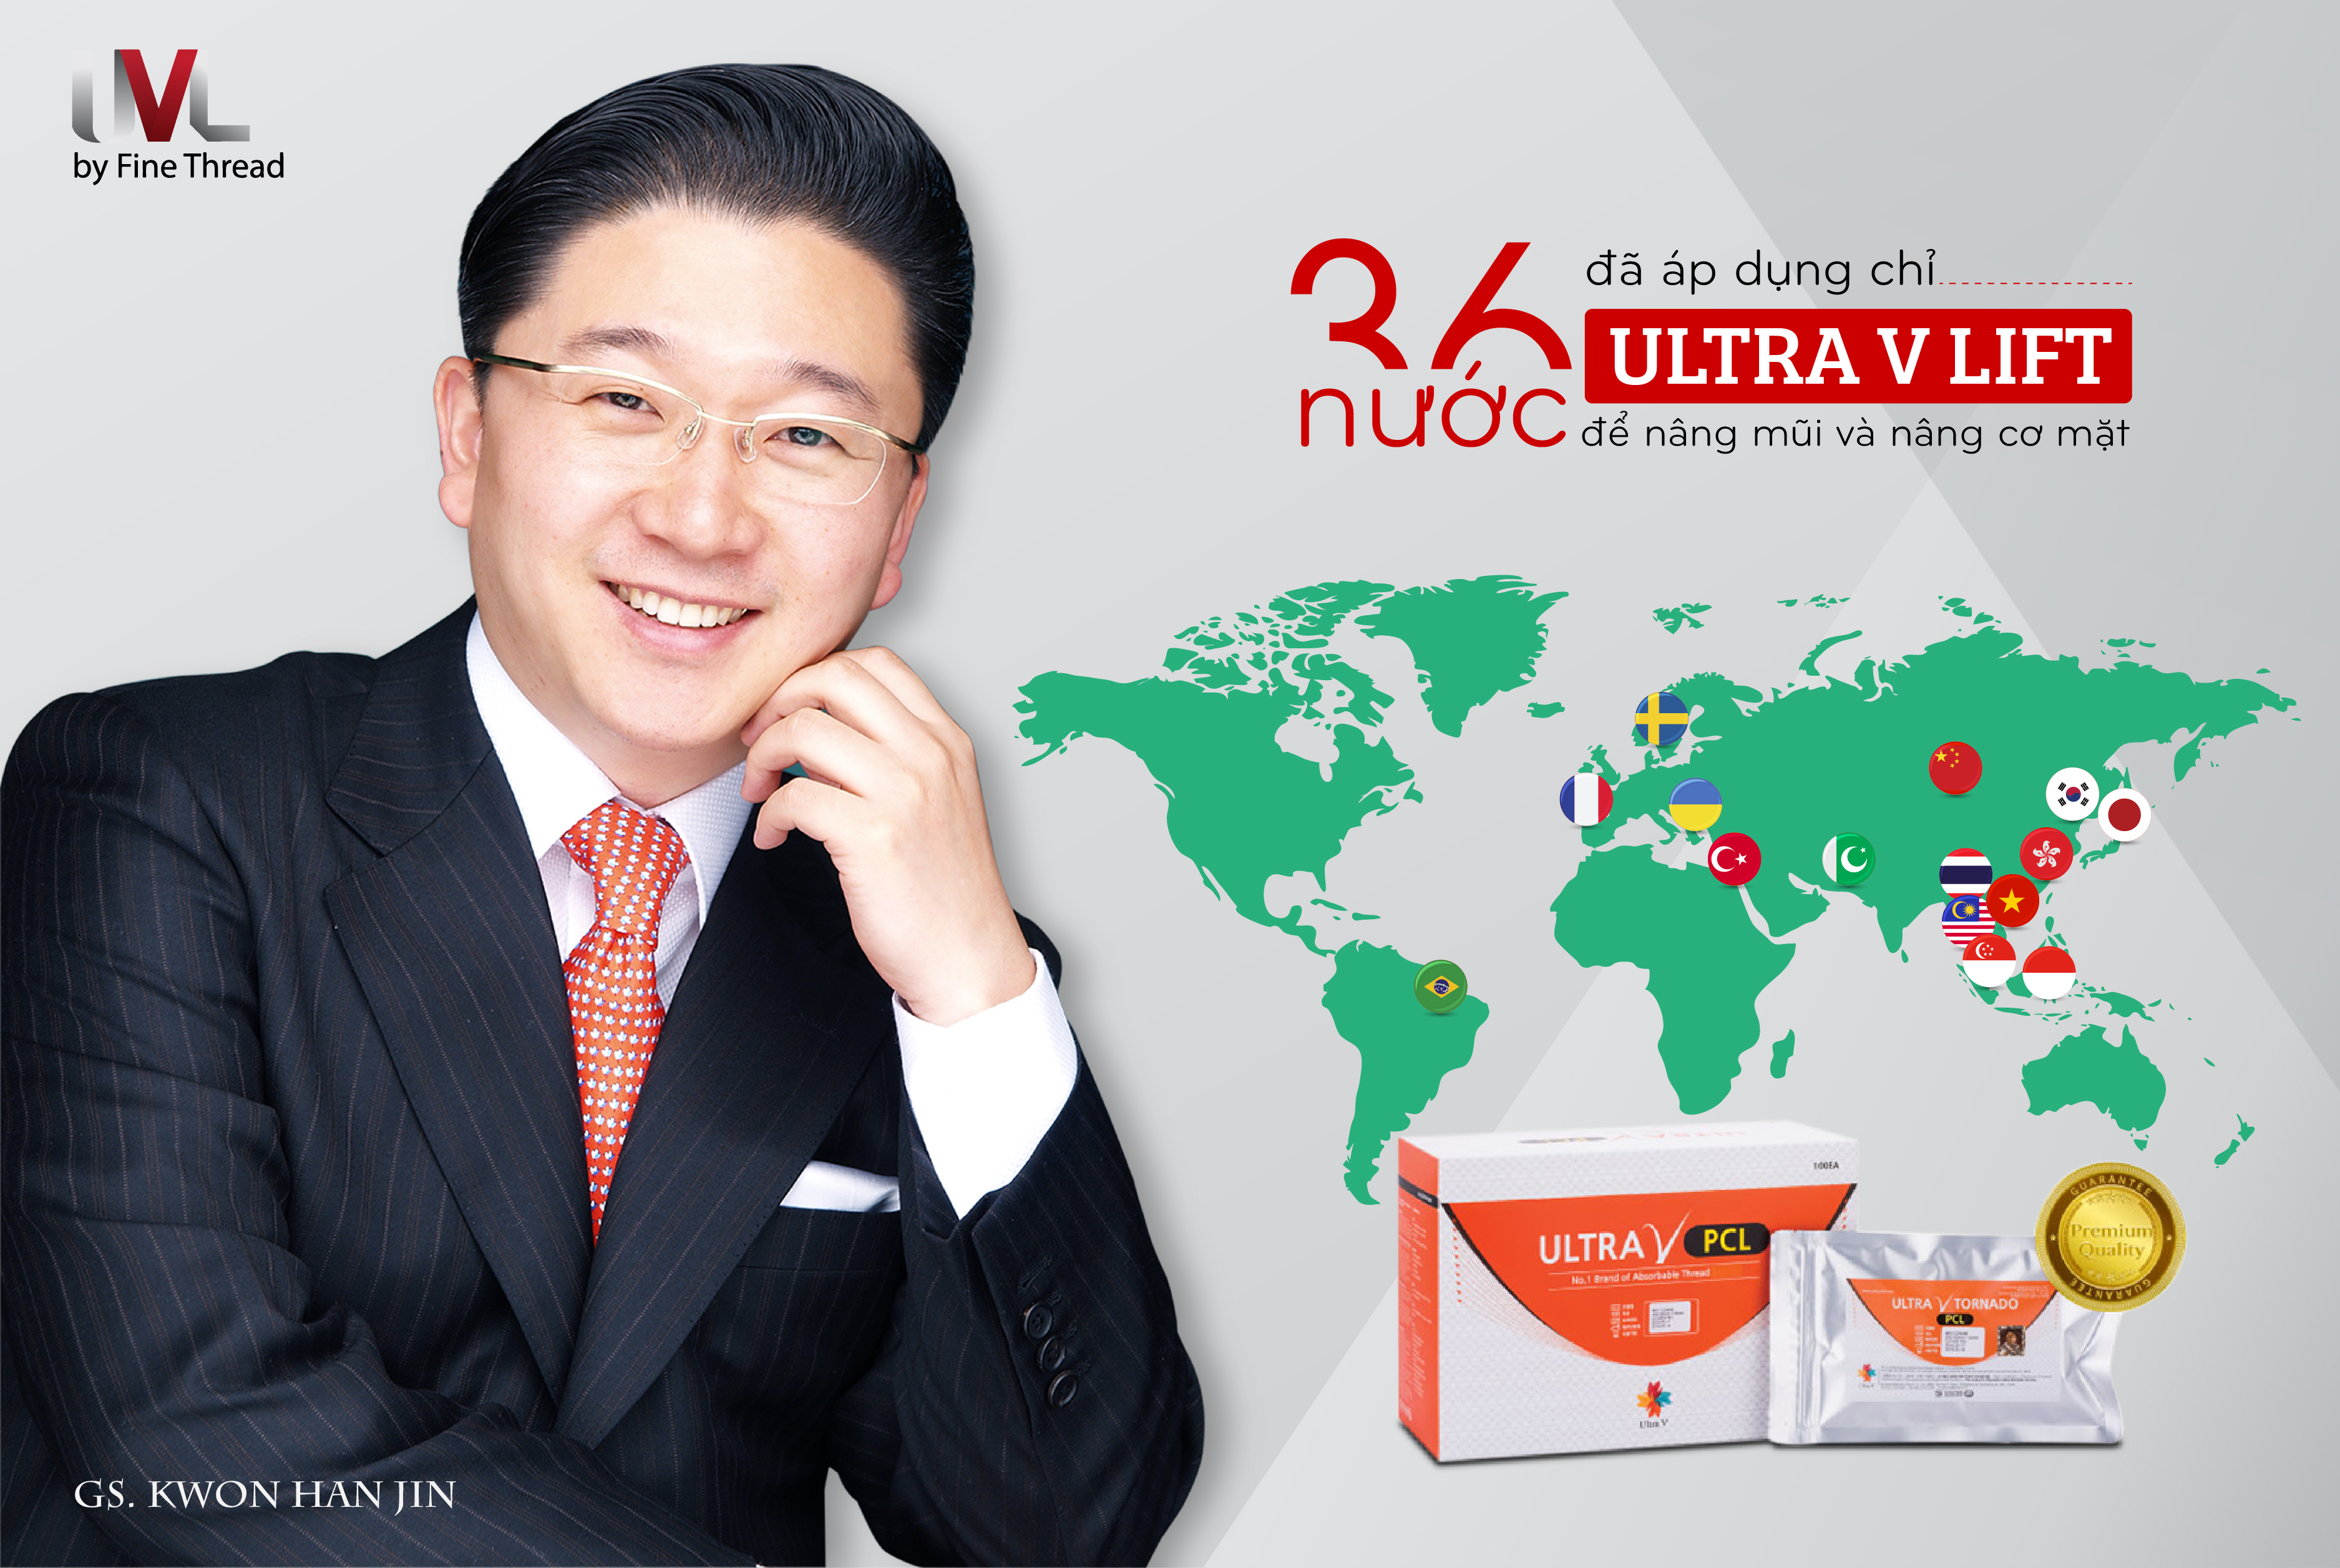 Chỉ Ultra V Lift đã có mặt ở gần 40 quốc gia trên thế giới